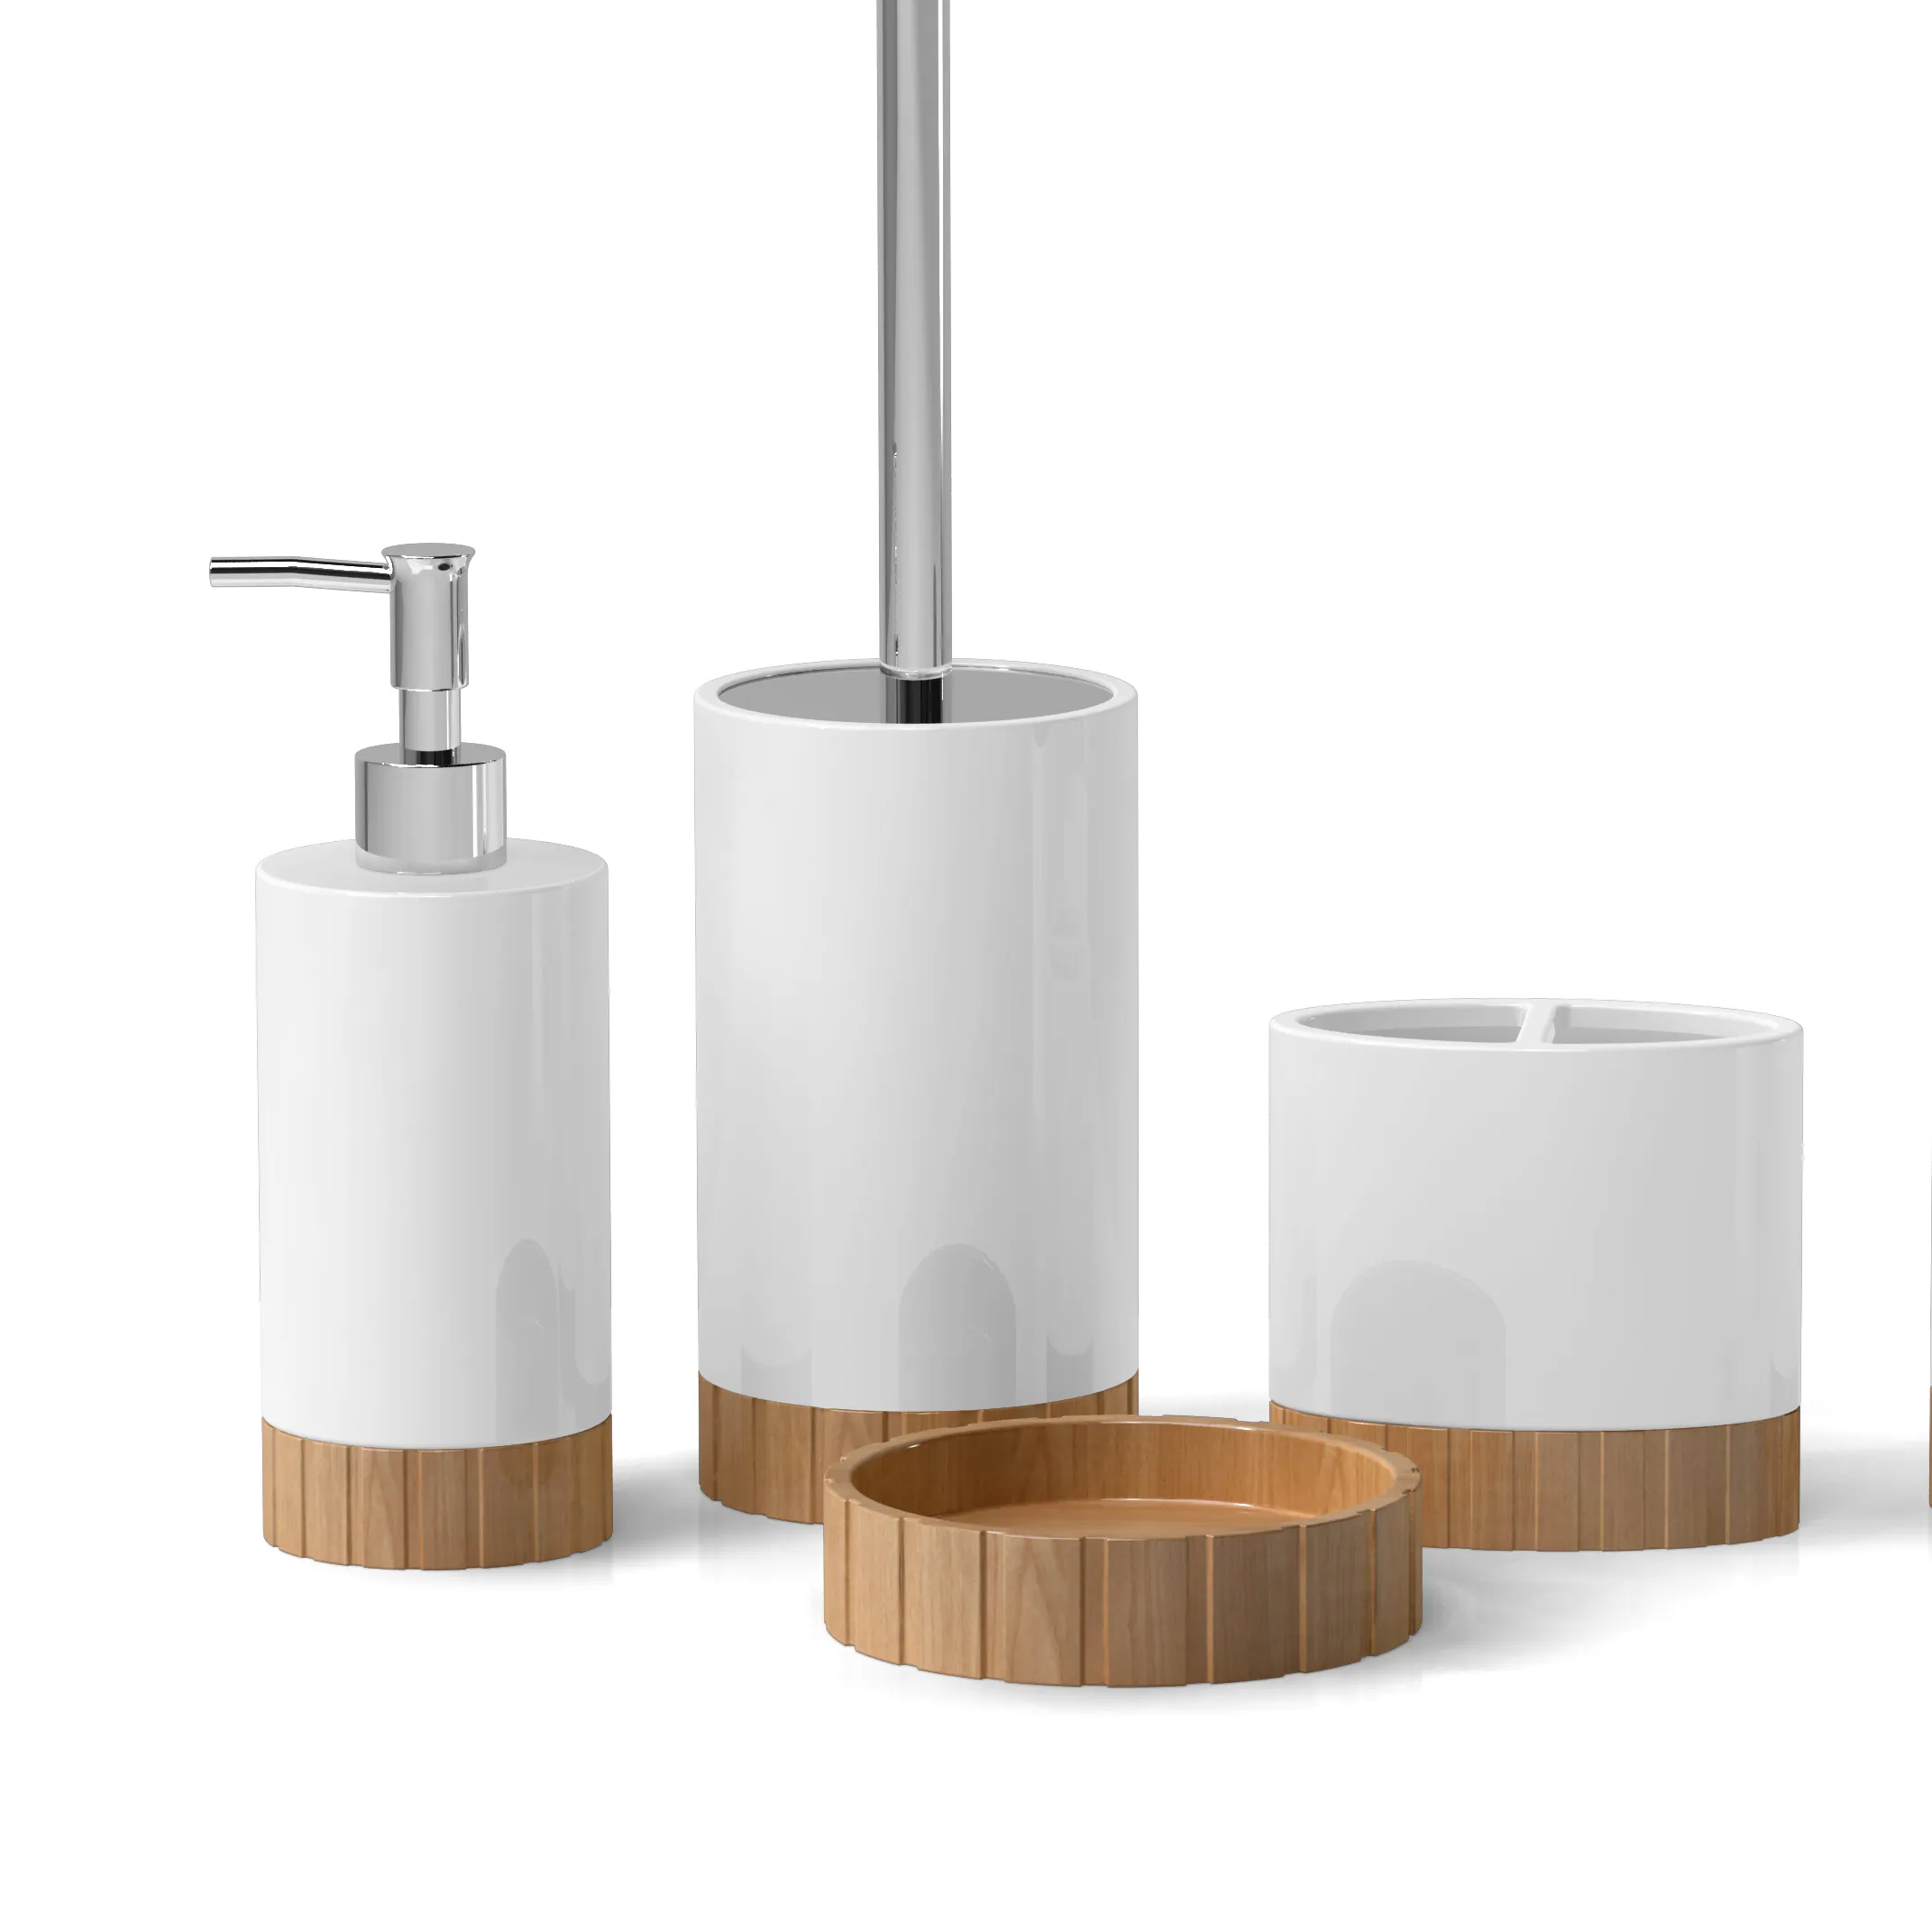 Juego de baño de cerámica ecológico con accesorios de baño de madera incluye soporte de cepillo de dientes diseñado OEM para uso doméstico